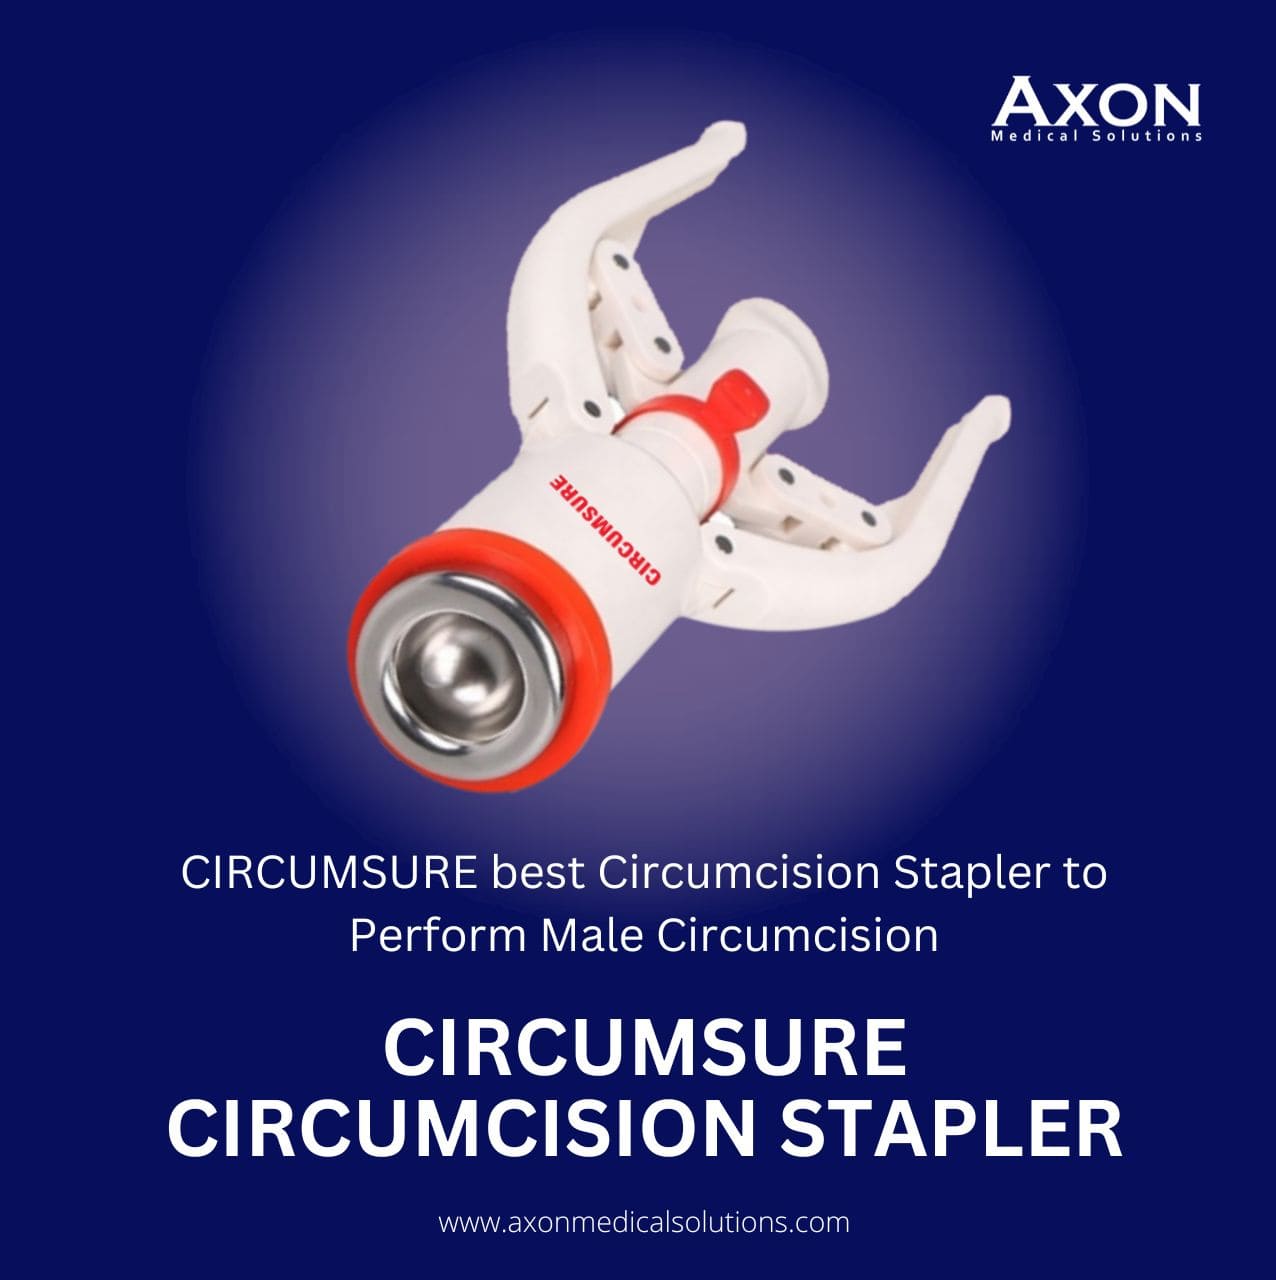  CIRCUMSURE best Circumcision Stapler to perform Male Circumcision